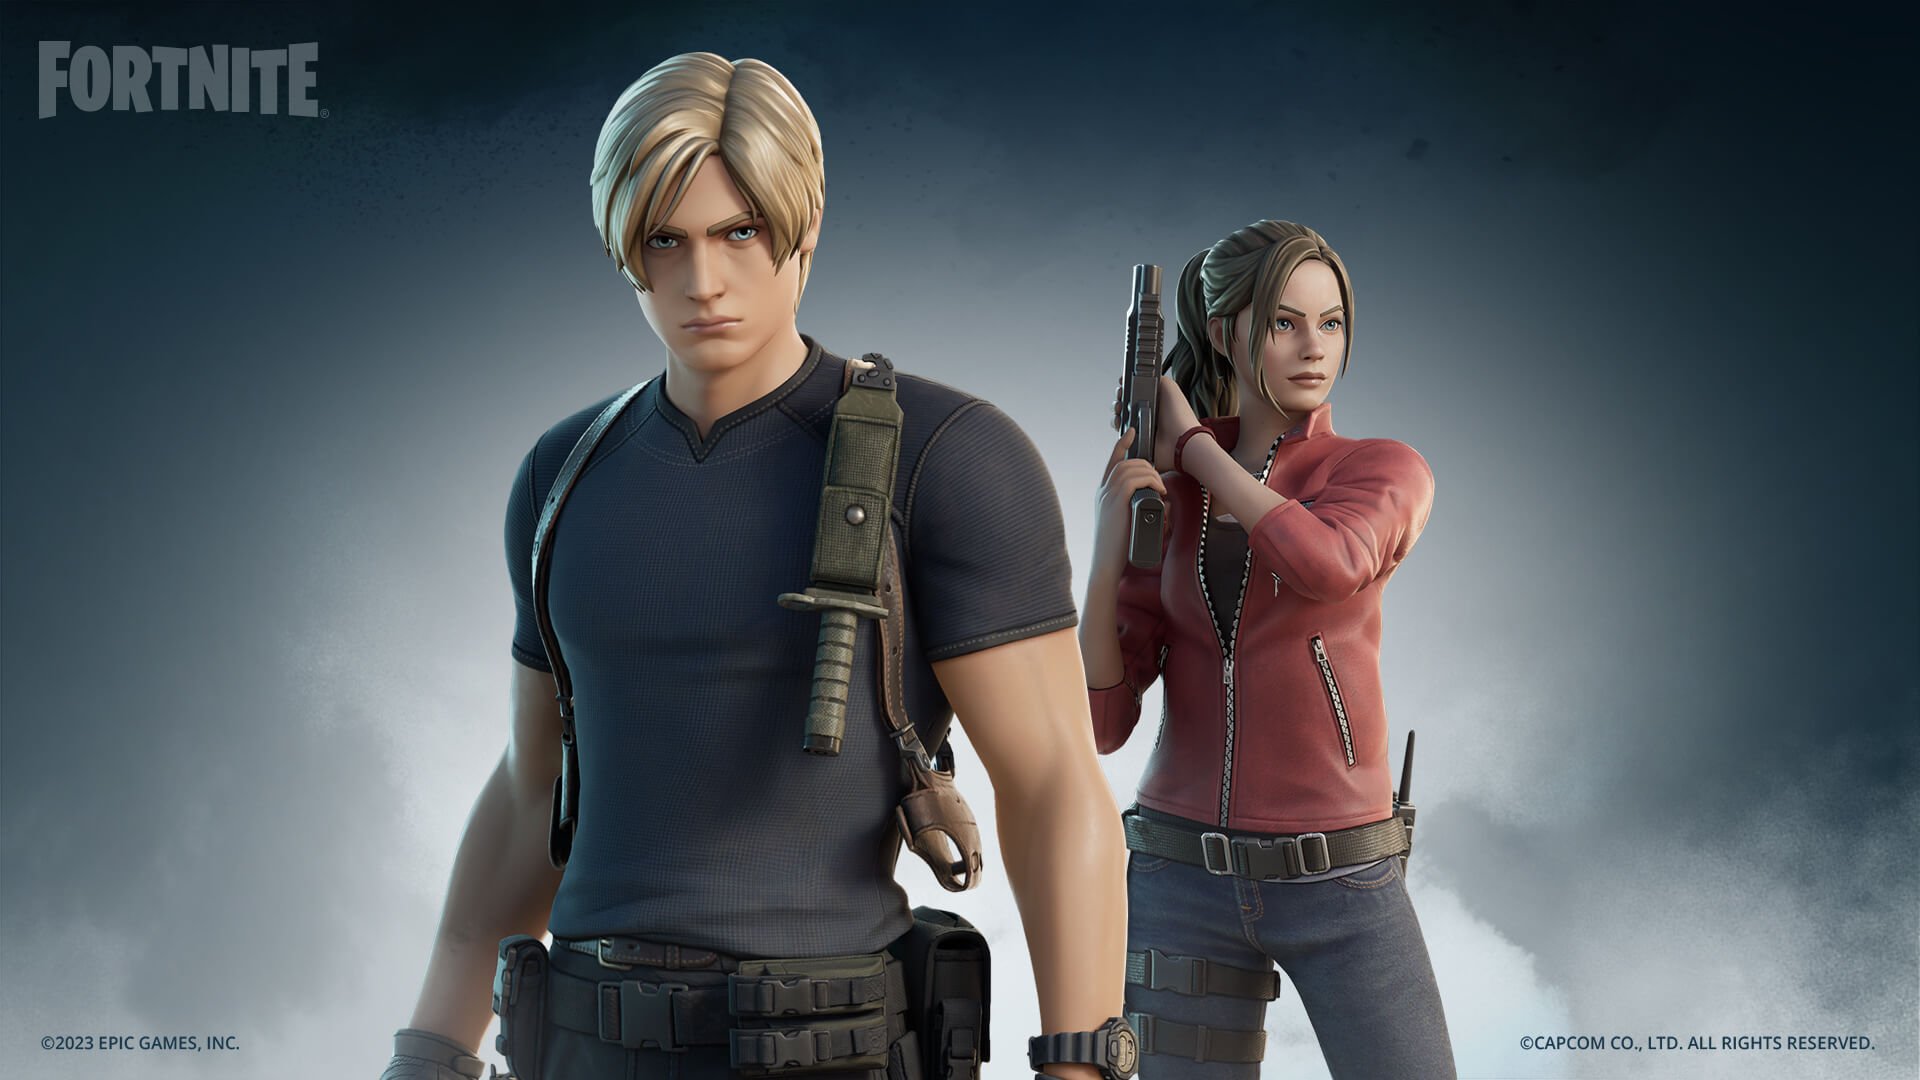 Fortnite Skins - Leon y Claire Skins al estilo de su remake de Resident Evil 4 y los estilos de remake de Resident Evil 2 respectivamente